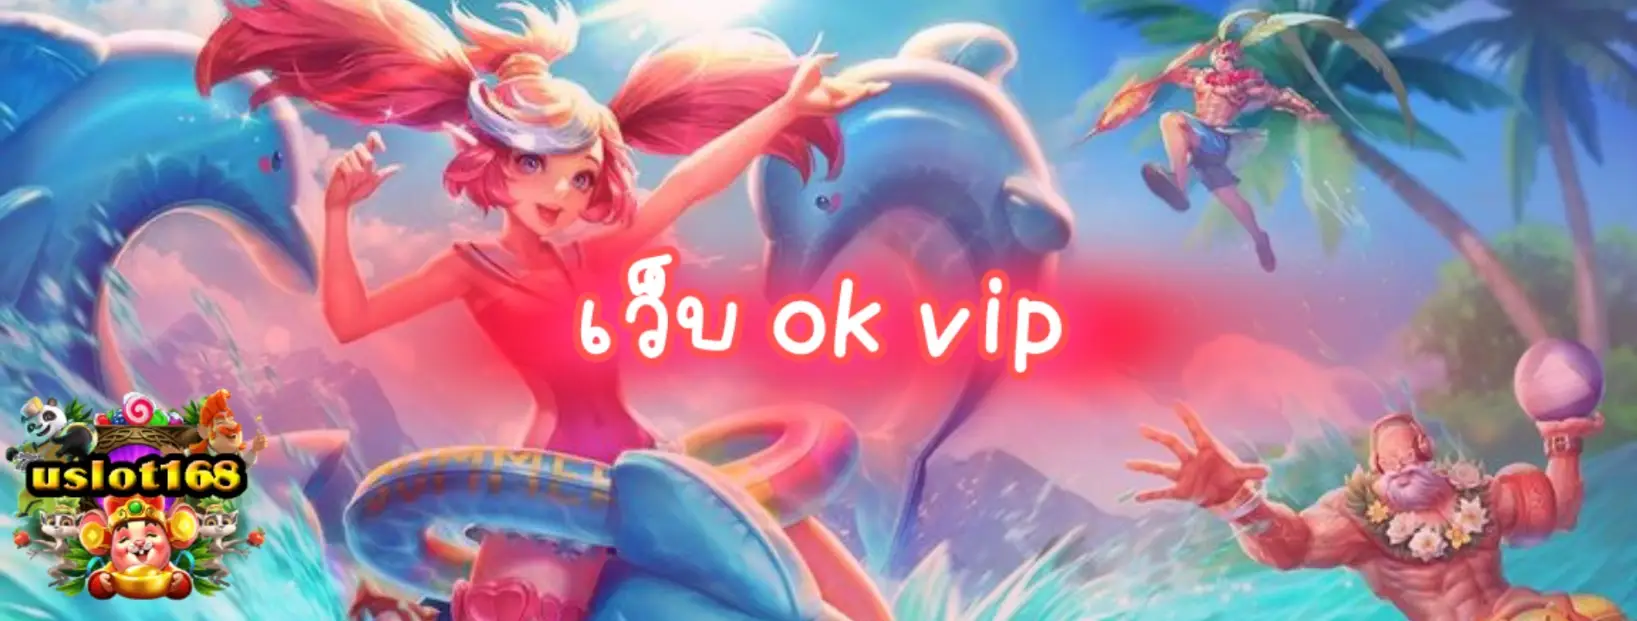 เว็บ ok vip ชวนสนุกกับสล็อตคาสิโนที่หลากหลายและน่าตื่นเต้น